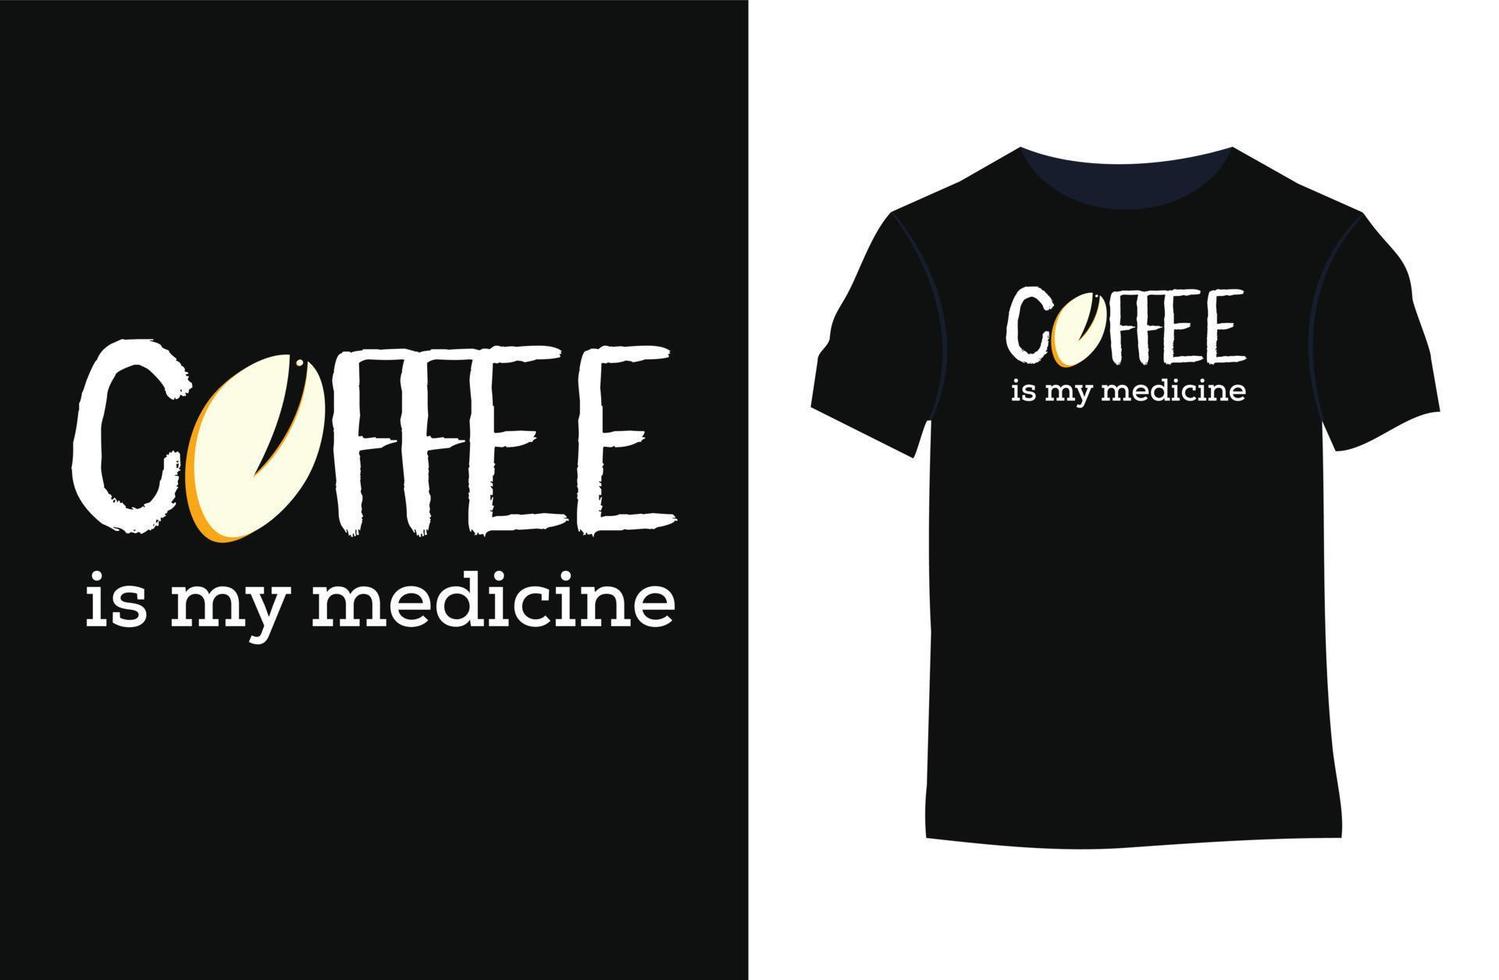 caffè tipografia citazioni vettore maglietta design